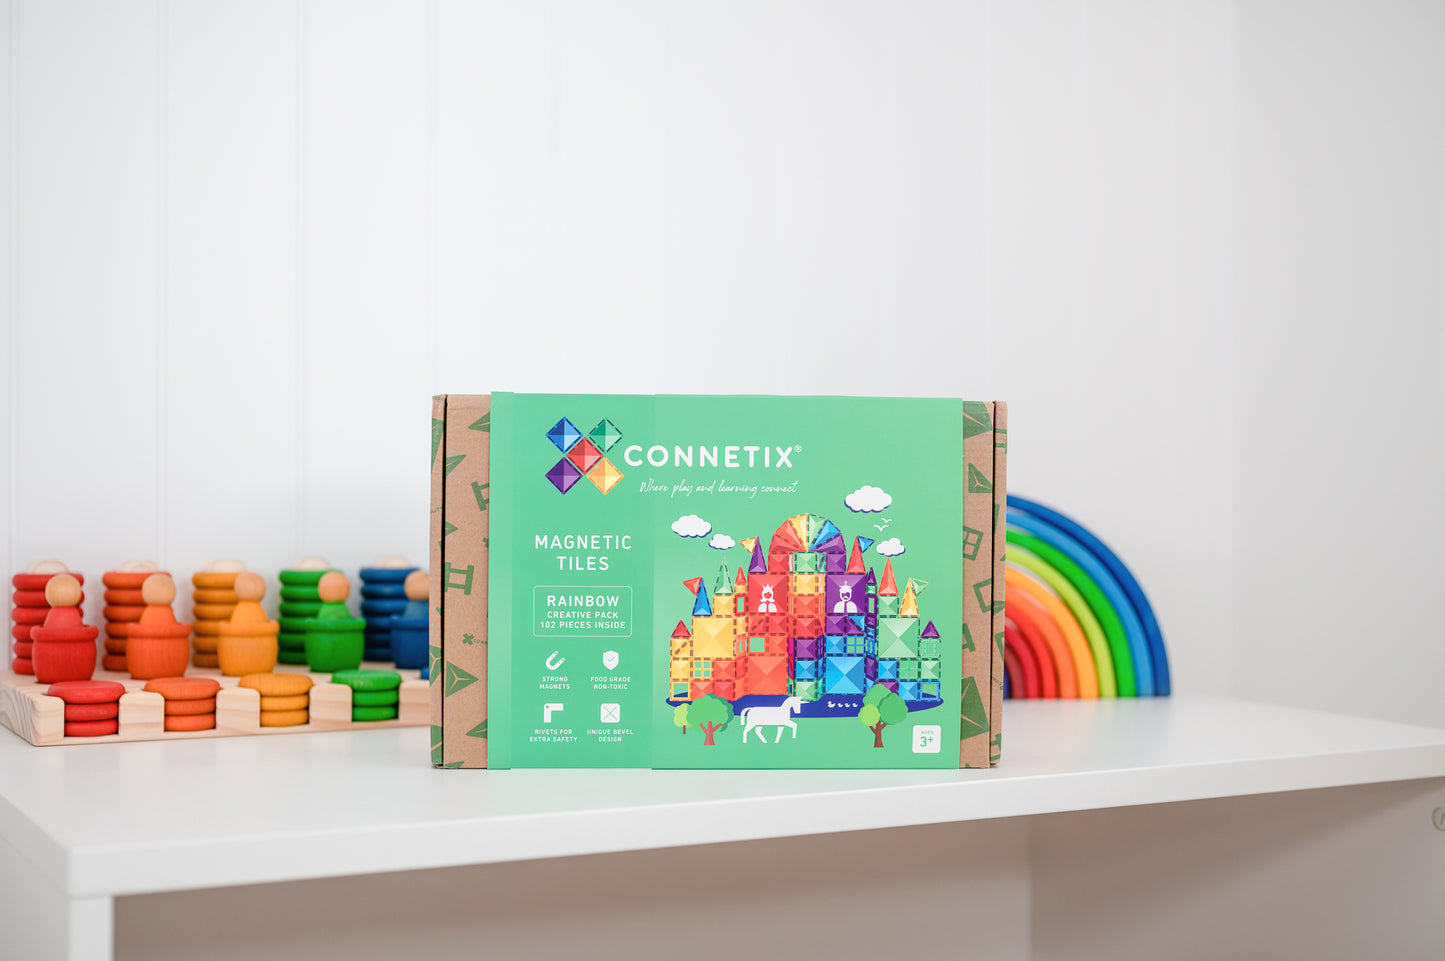 Connetix - 102 Piece Rainbow Creative Pack Magnetic Tiles